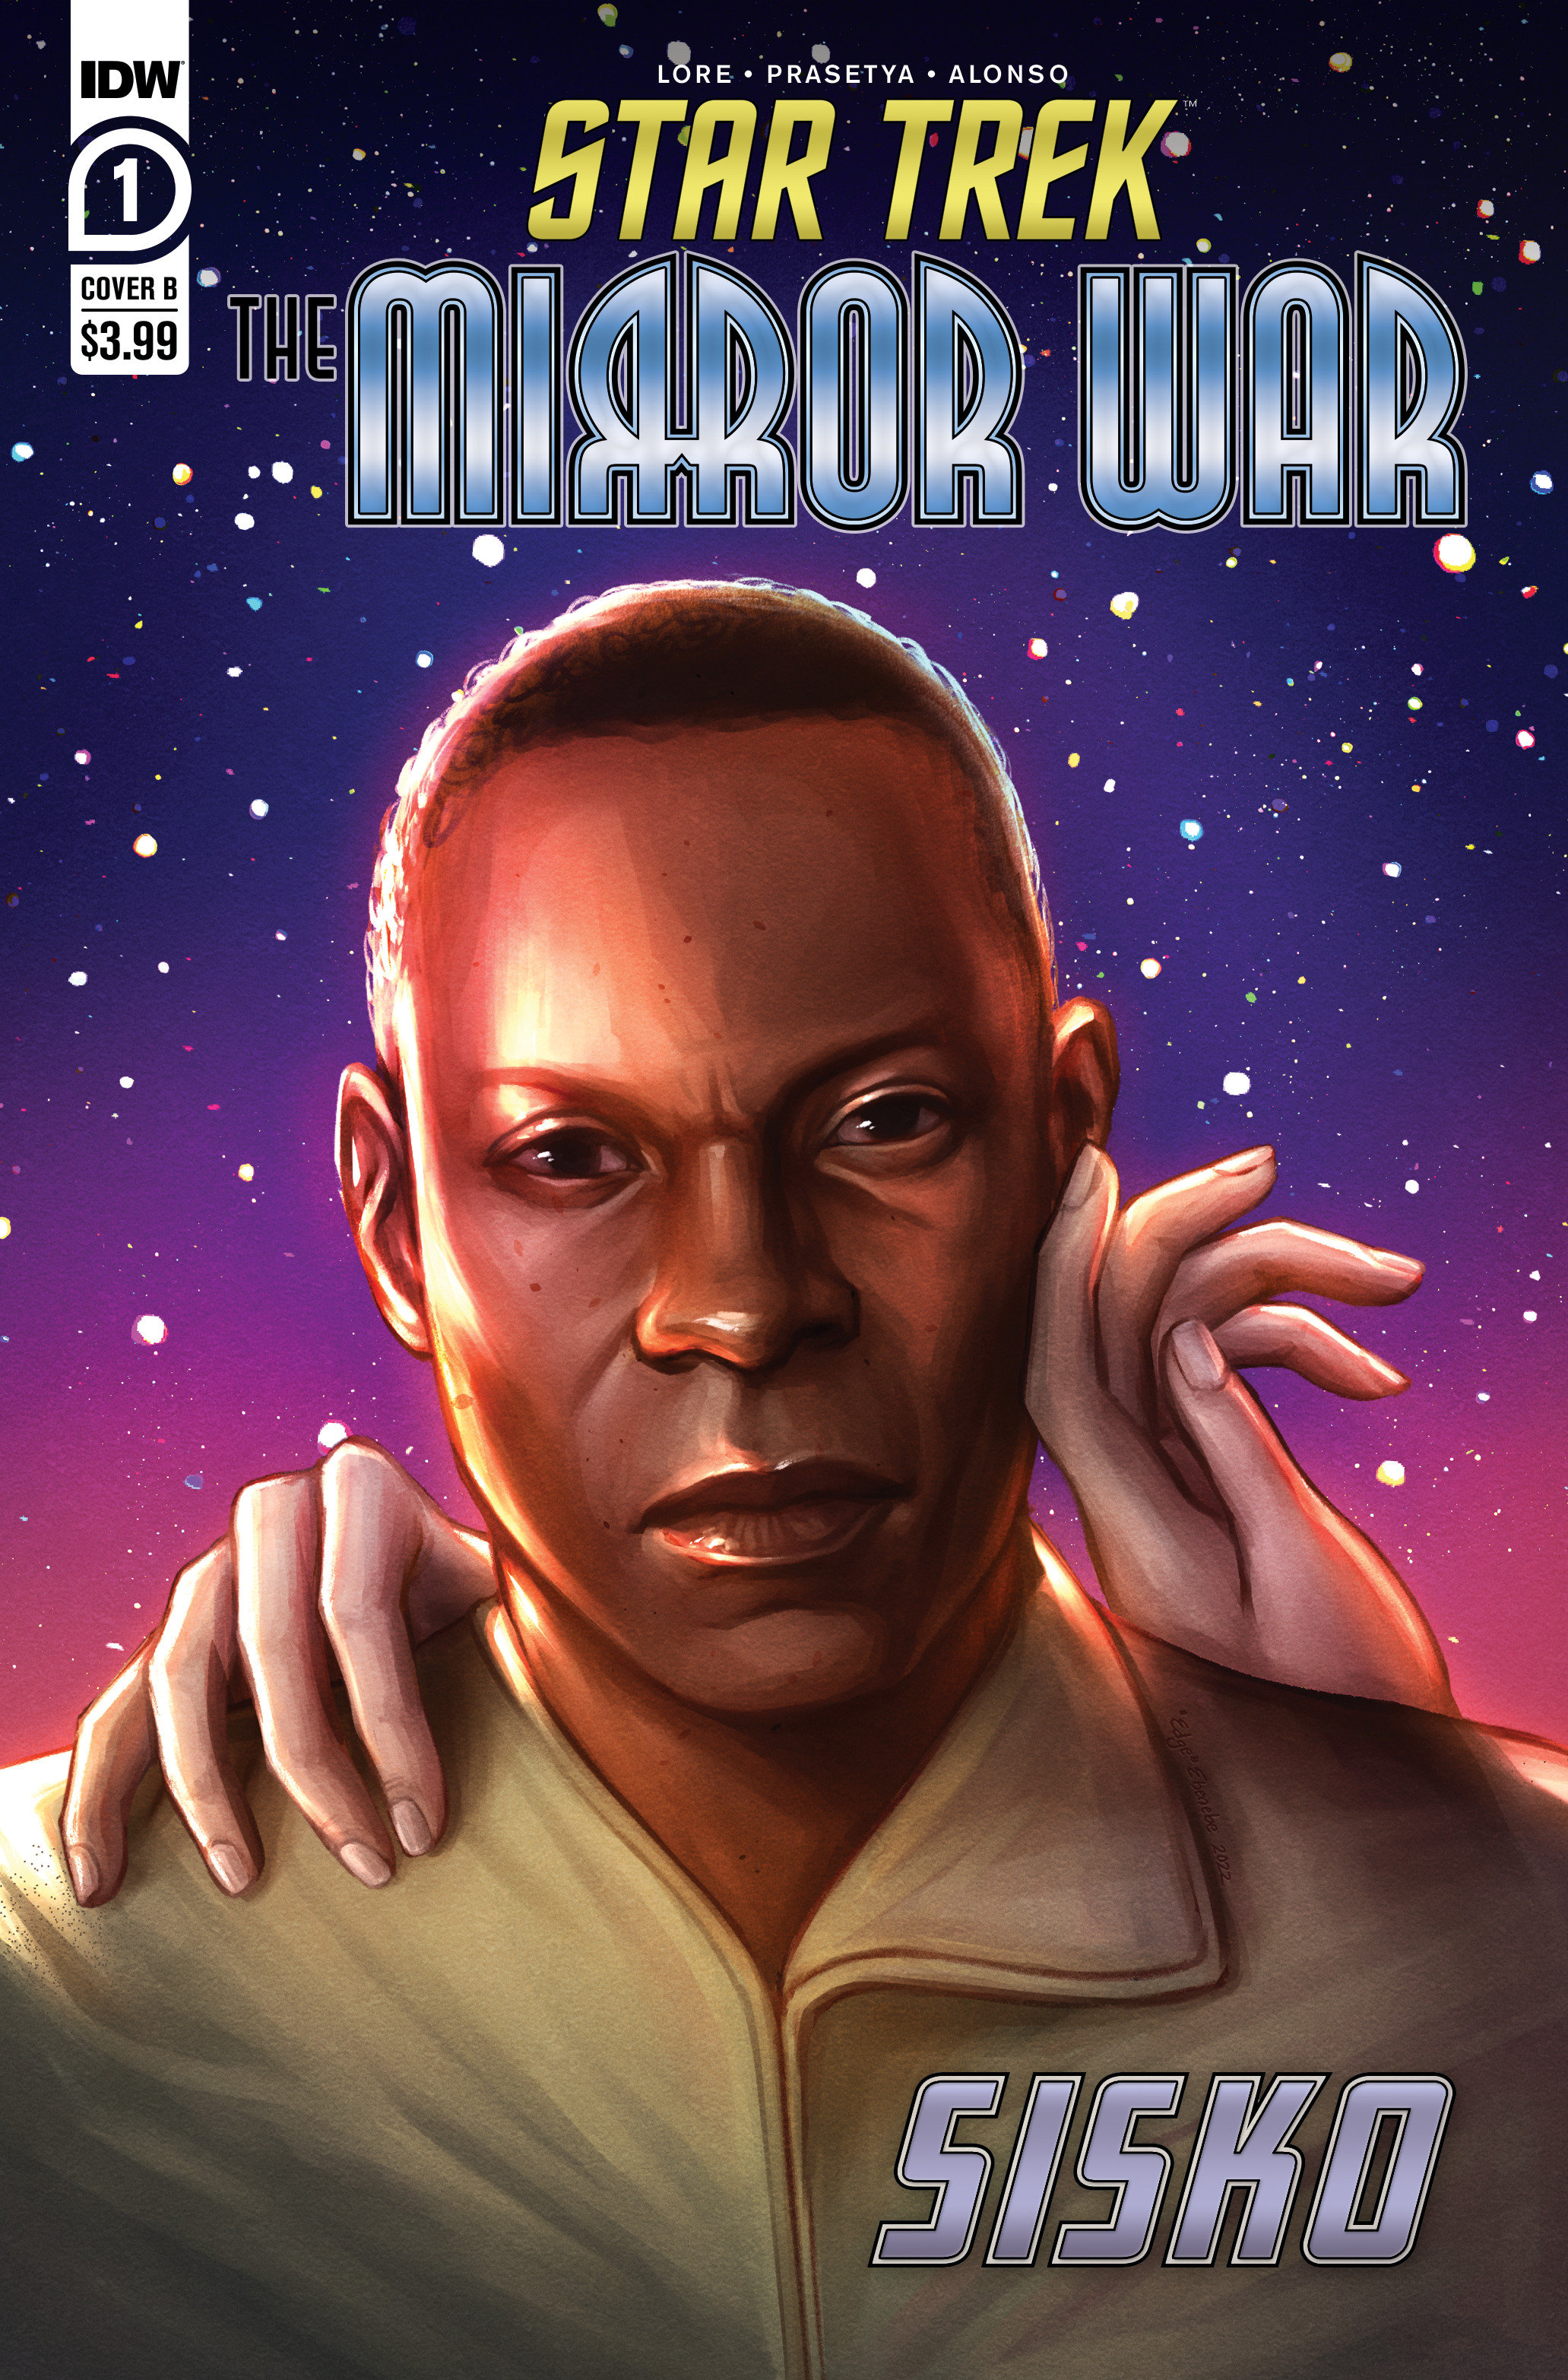 Star Trek Mirror War Sisko Cover B Evenebe